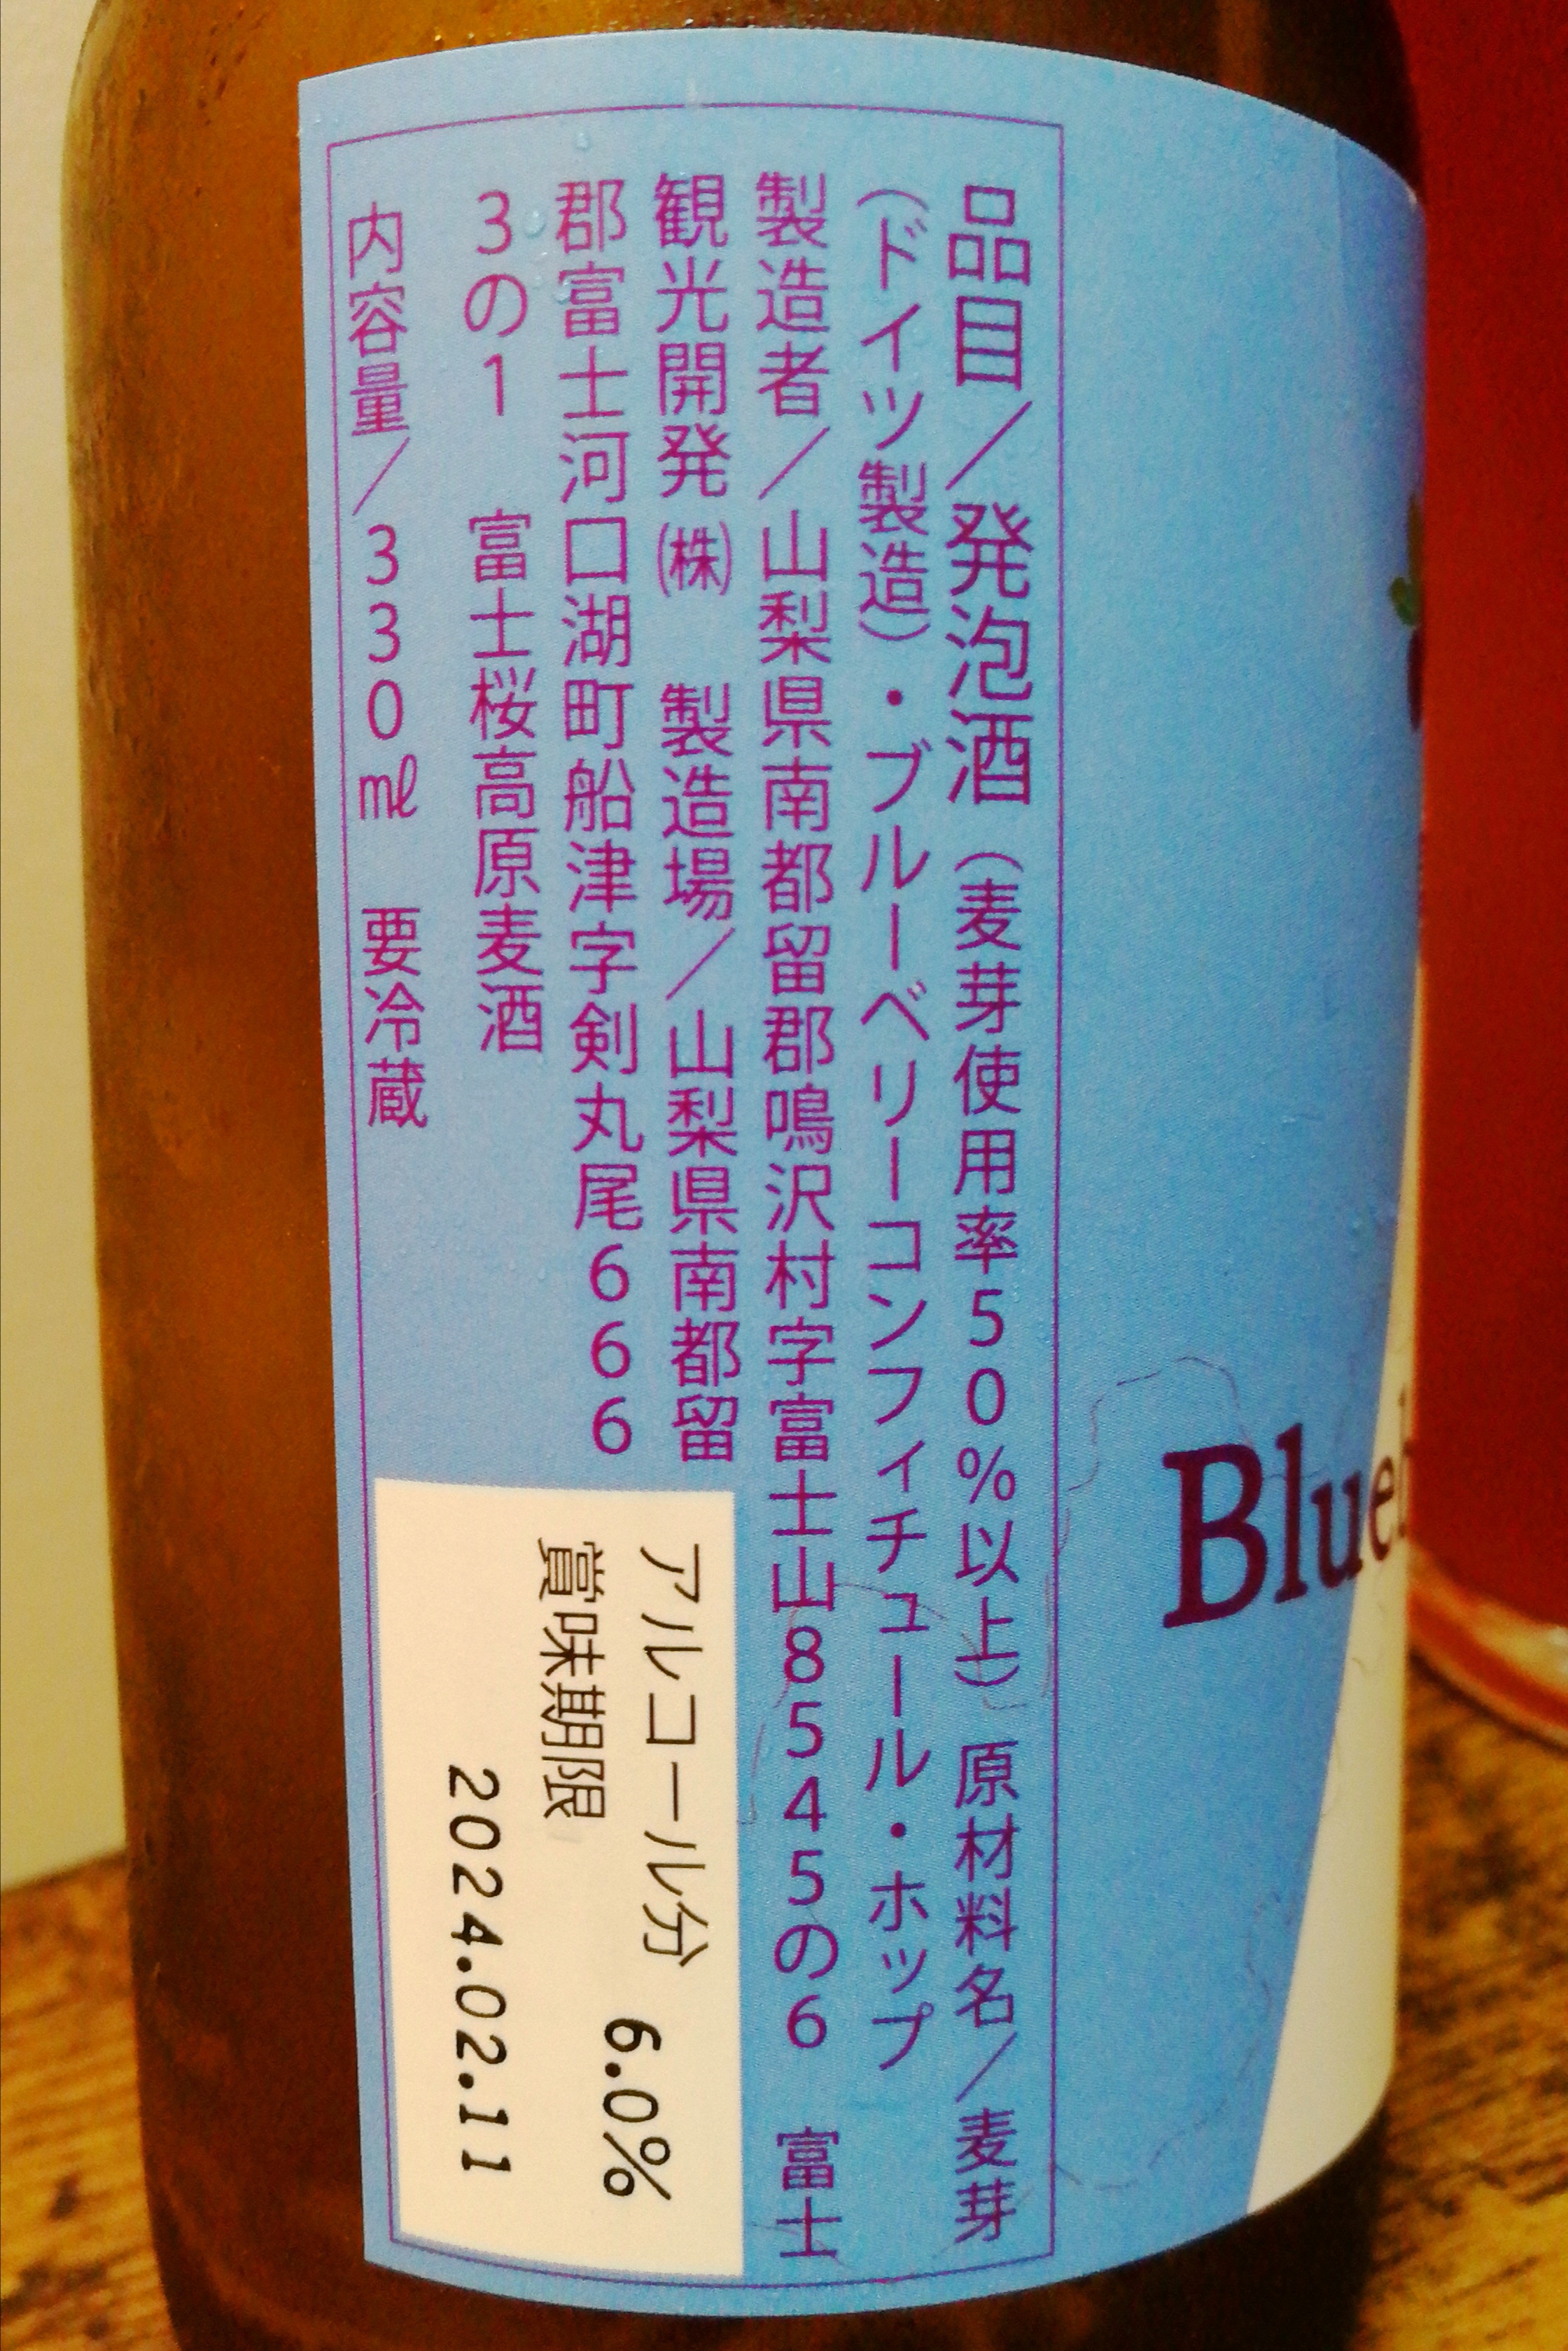 山梨,富士桜高原麦酒,BlueberryWeizen